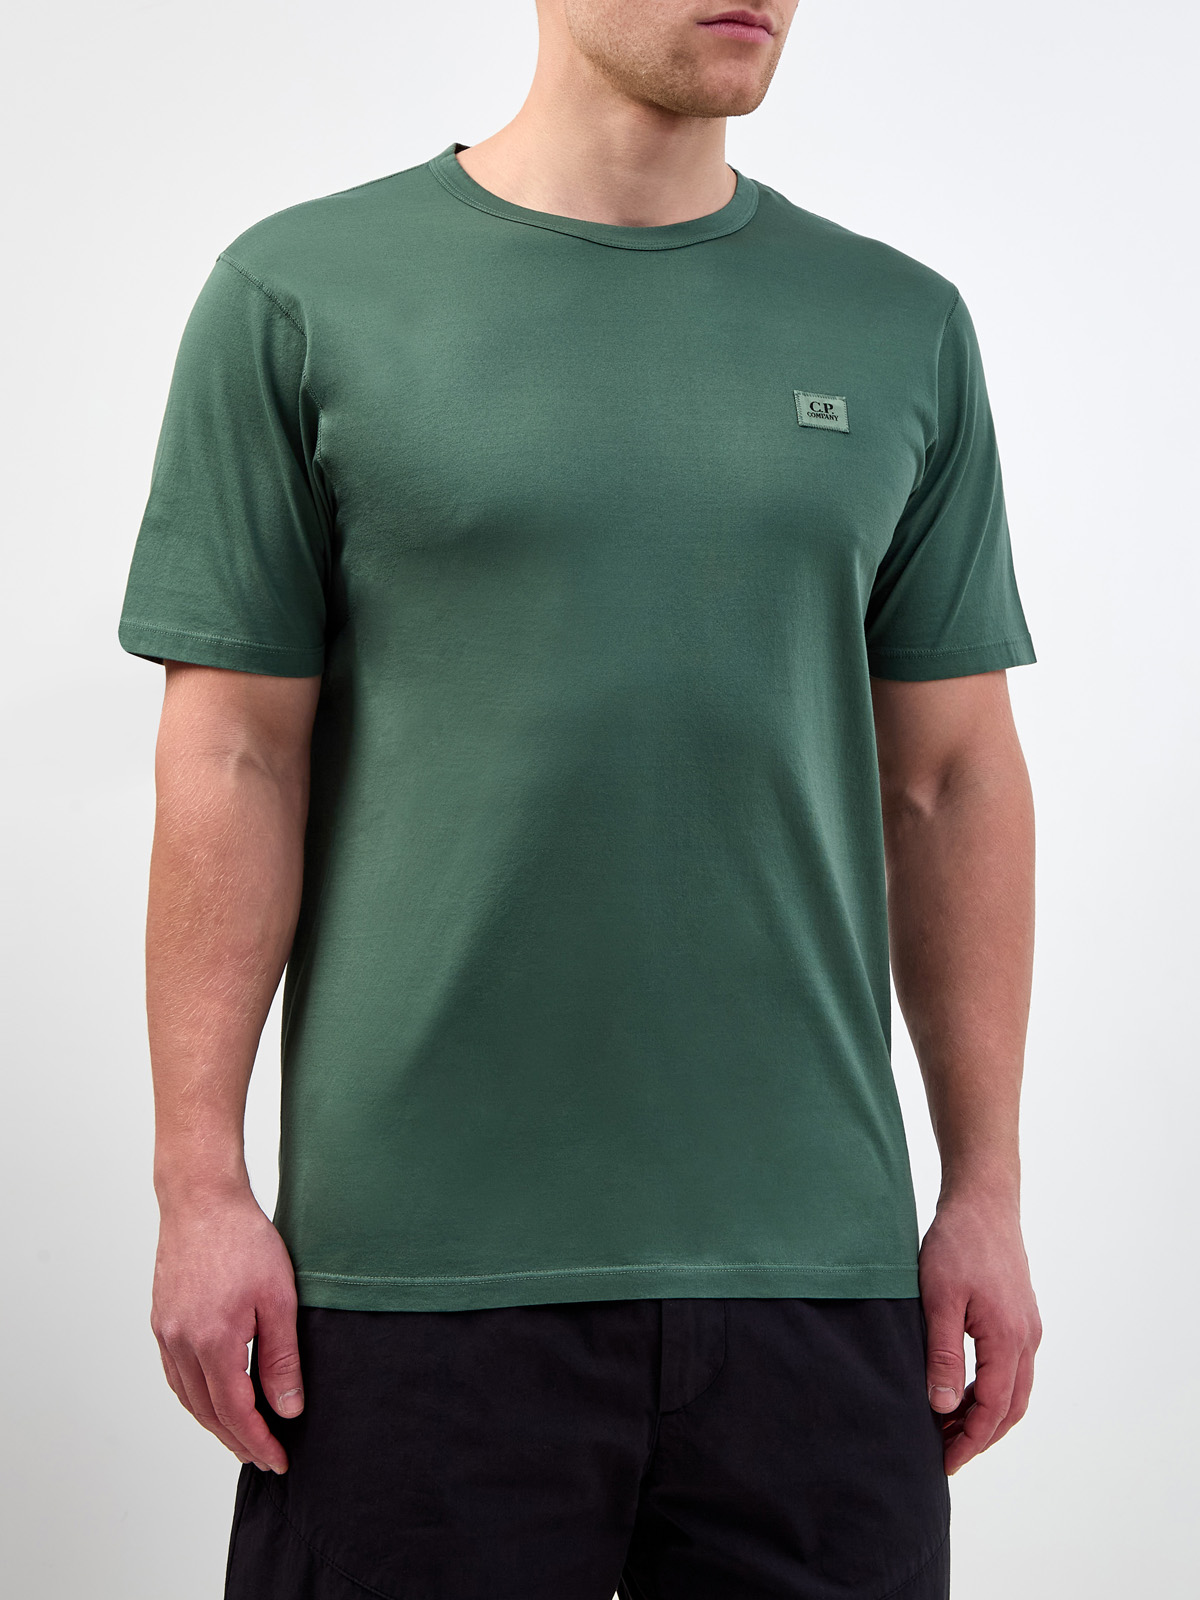 Однотонная футболка из гладкого хлопка джерси с нашивкой C.P.COMPANY, цвет зеленый, размер 48;52;54 - фото 3